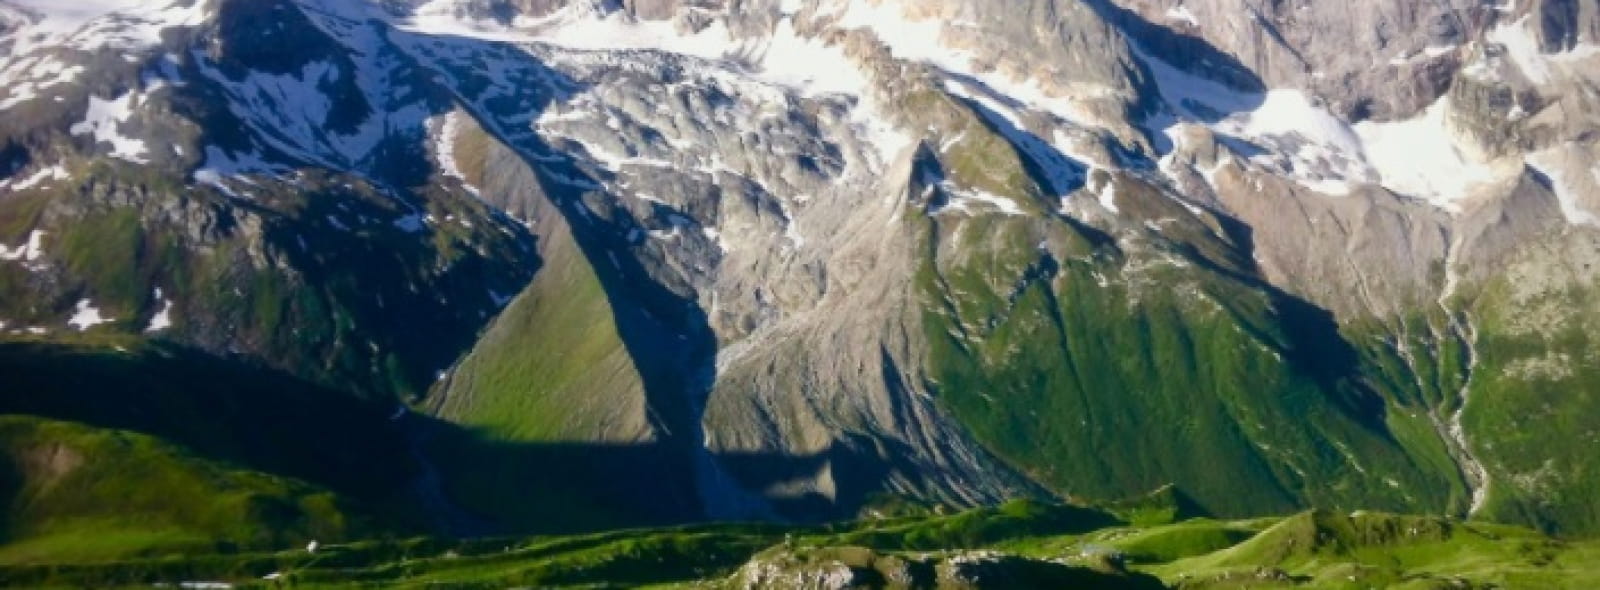 Montagne du Parc National de la Vanoise